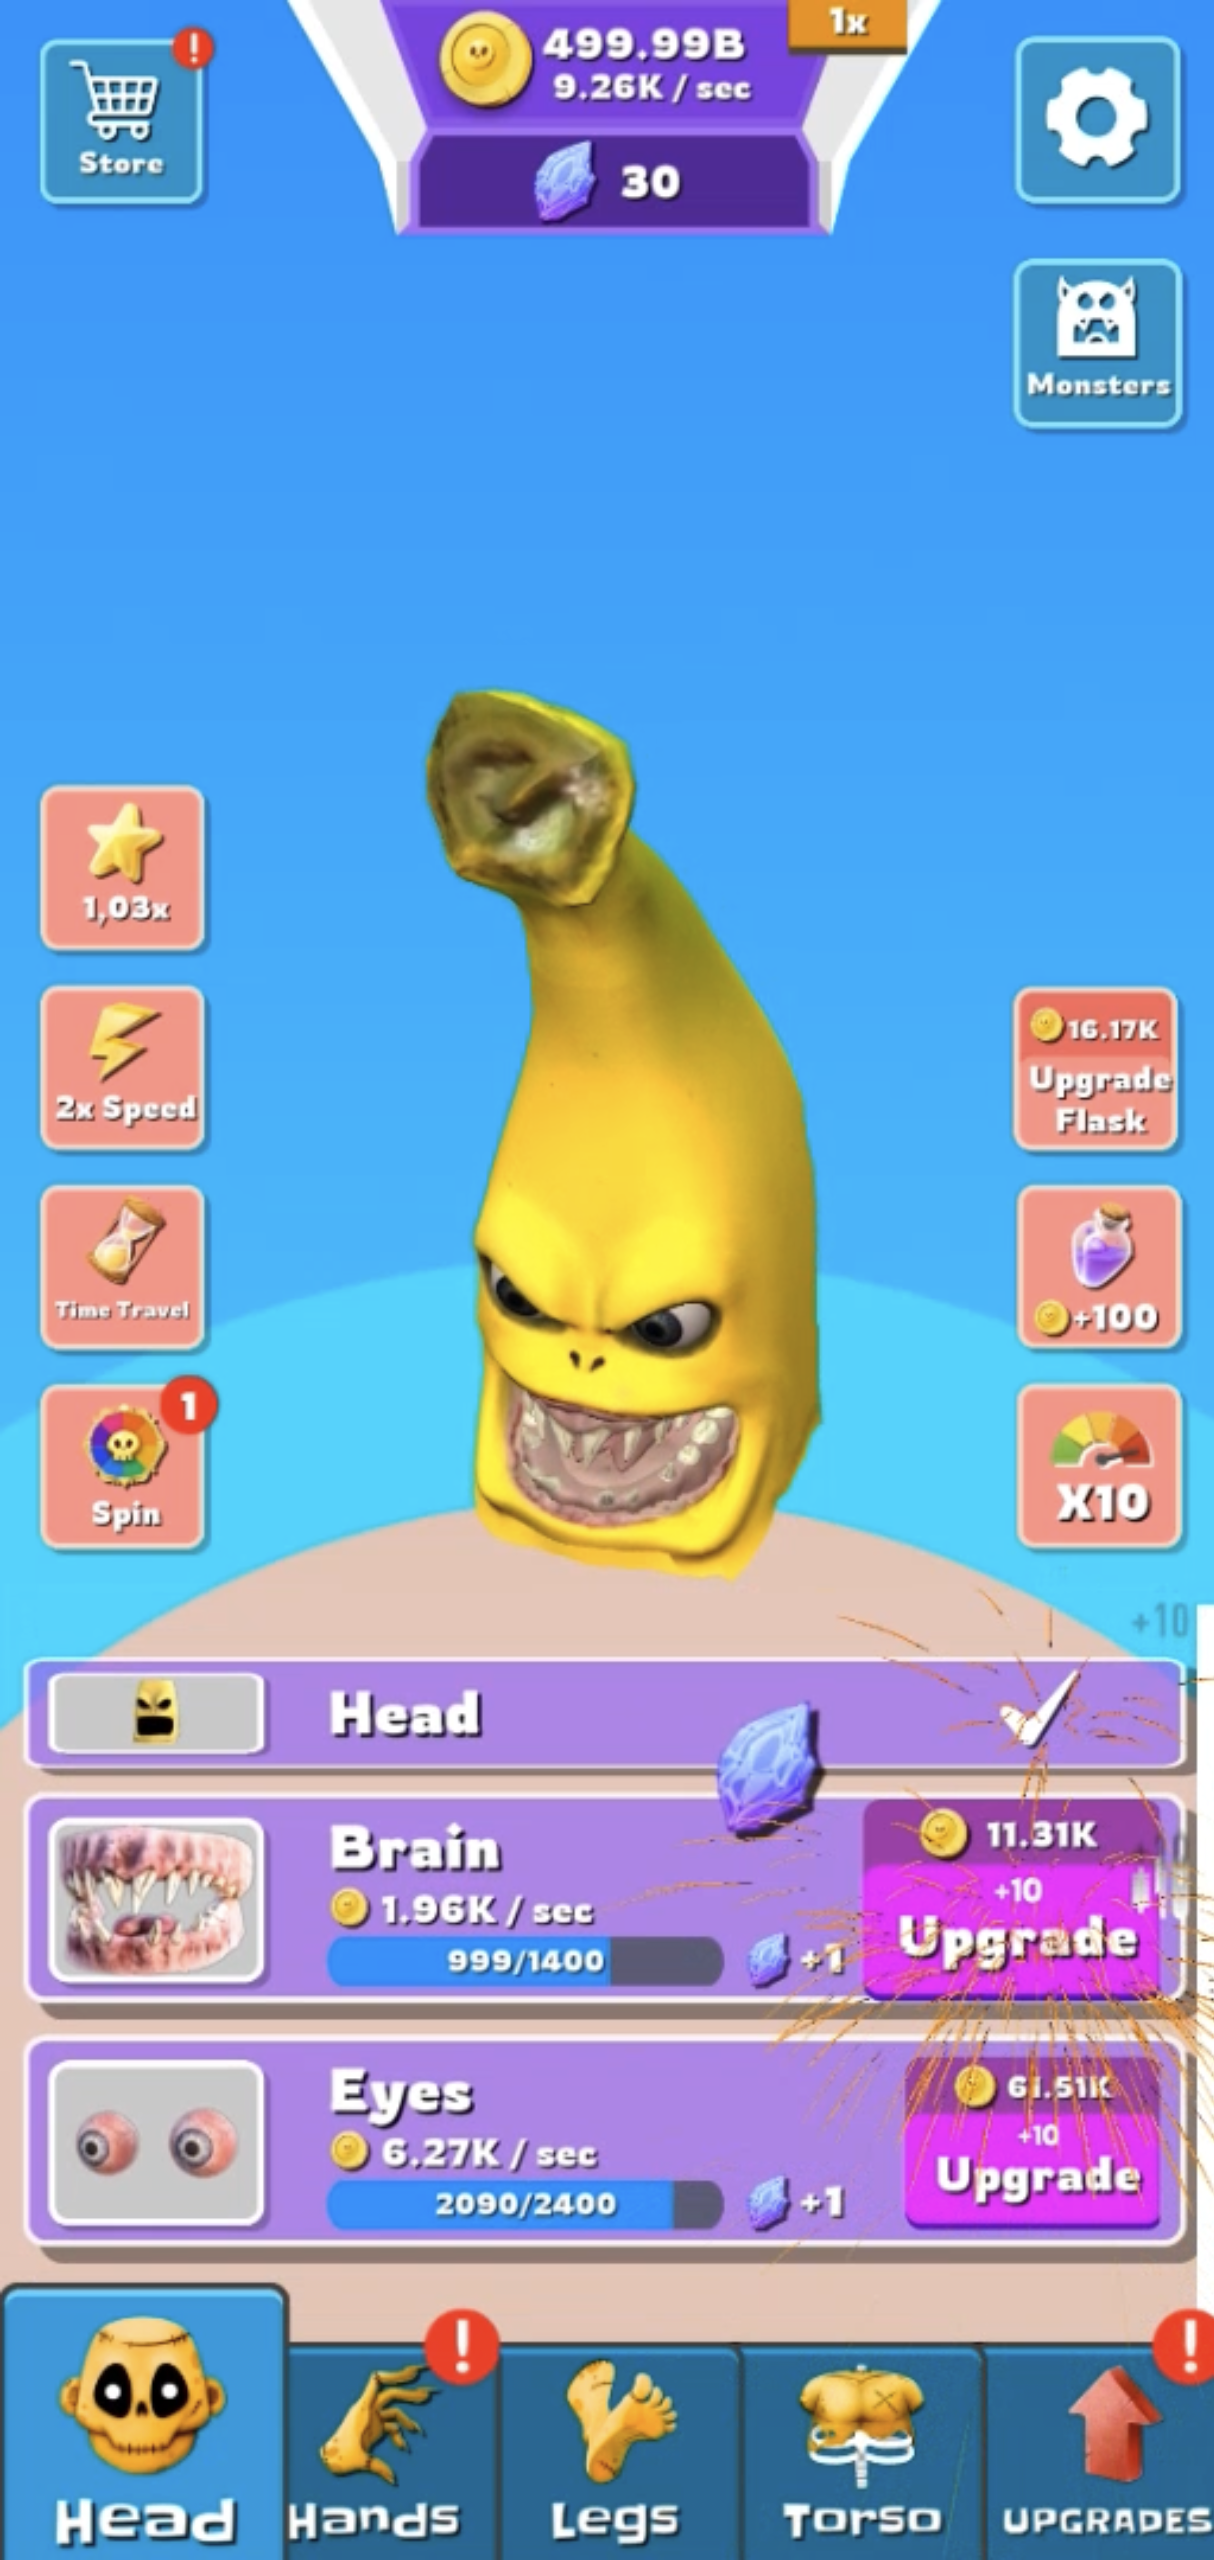 Garden Of Banana Game APK (Android Game) - Baixar Grátis